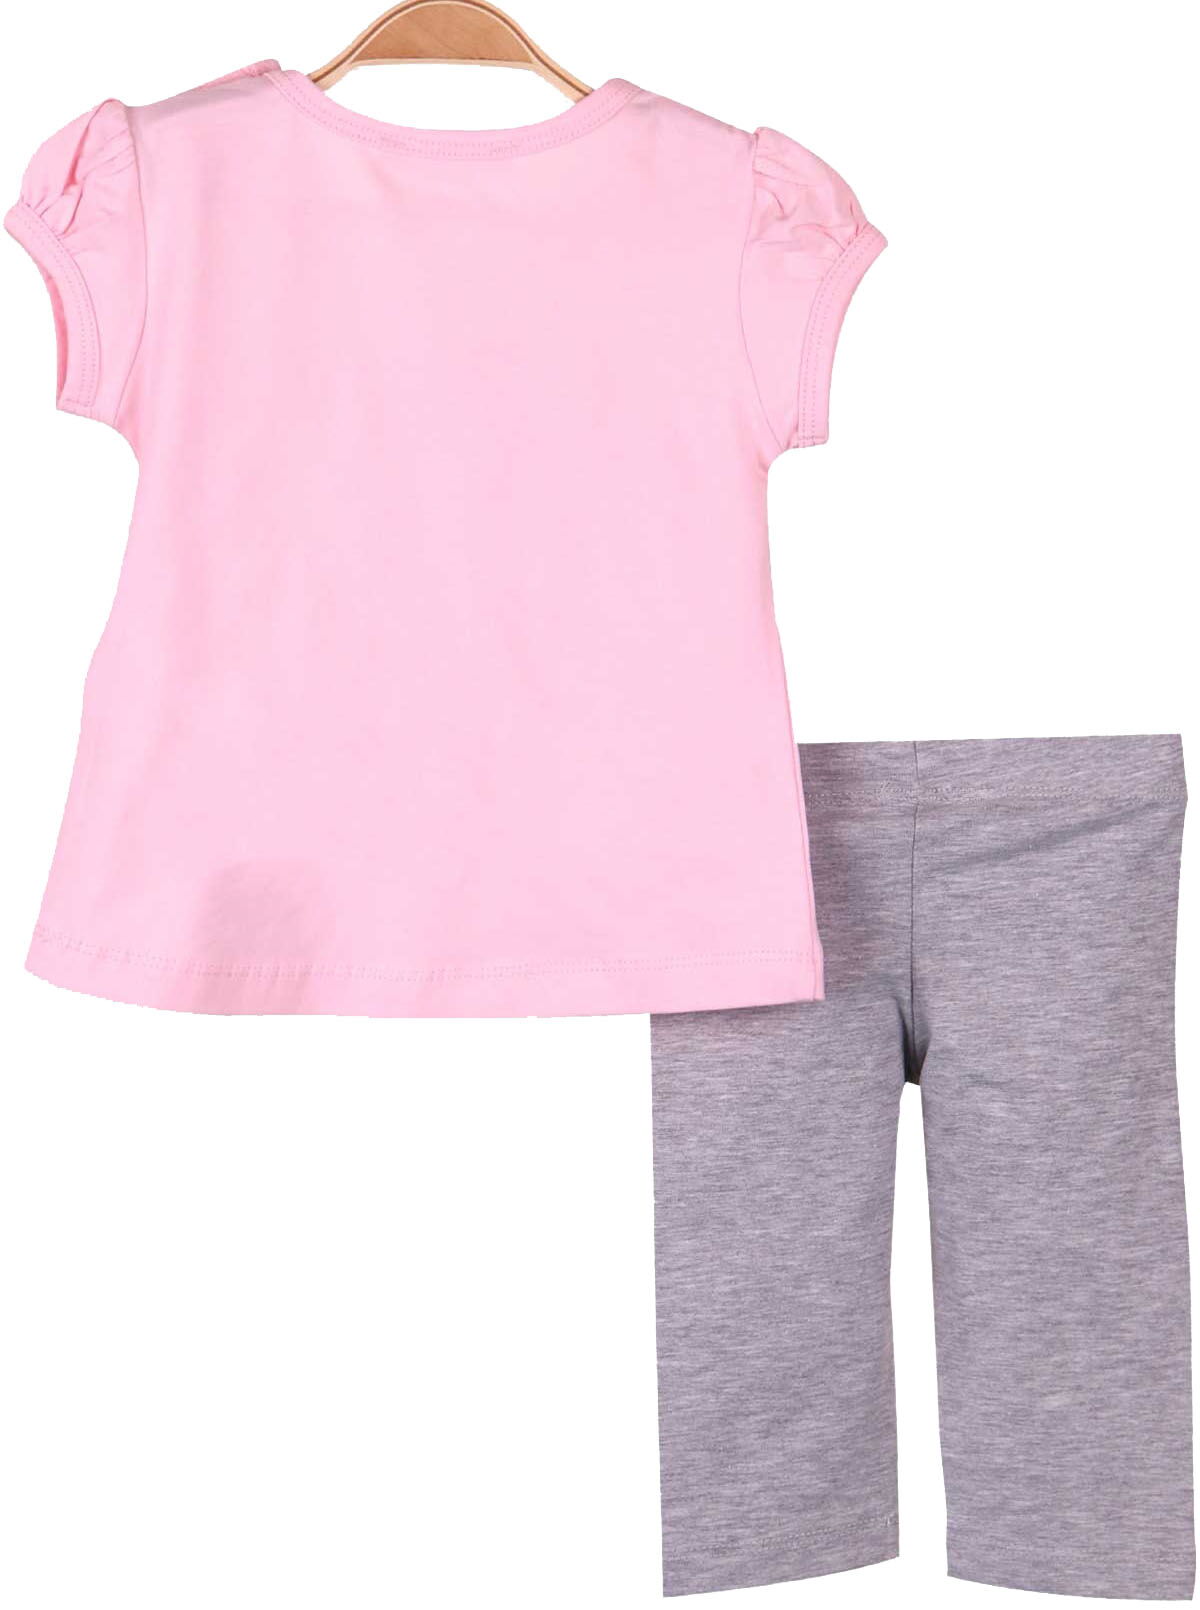 Комплект футболка и бриджи для девочки Breeze Amazing Girl розовый 15705 - купить